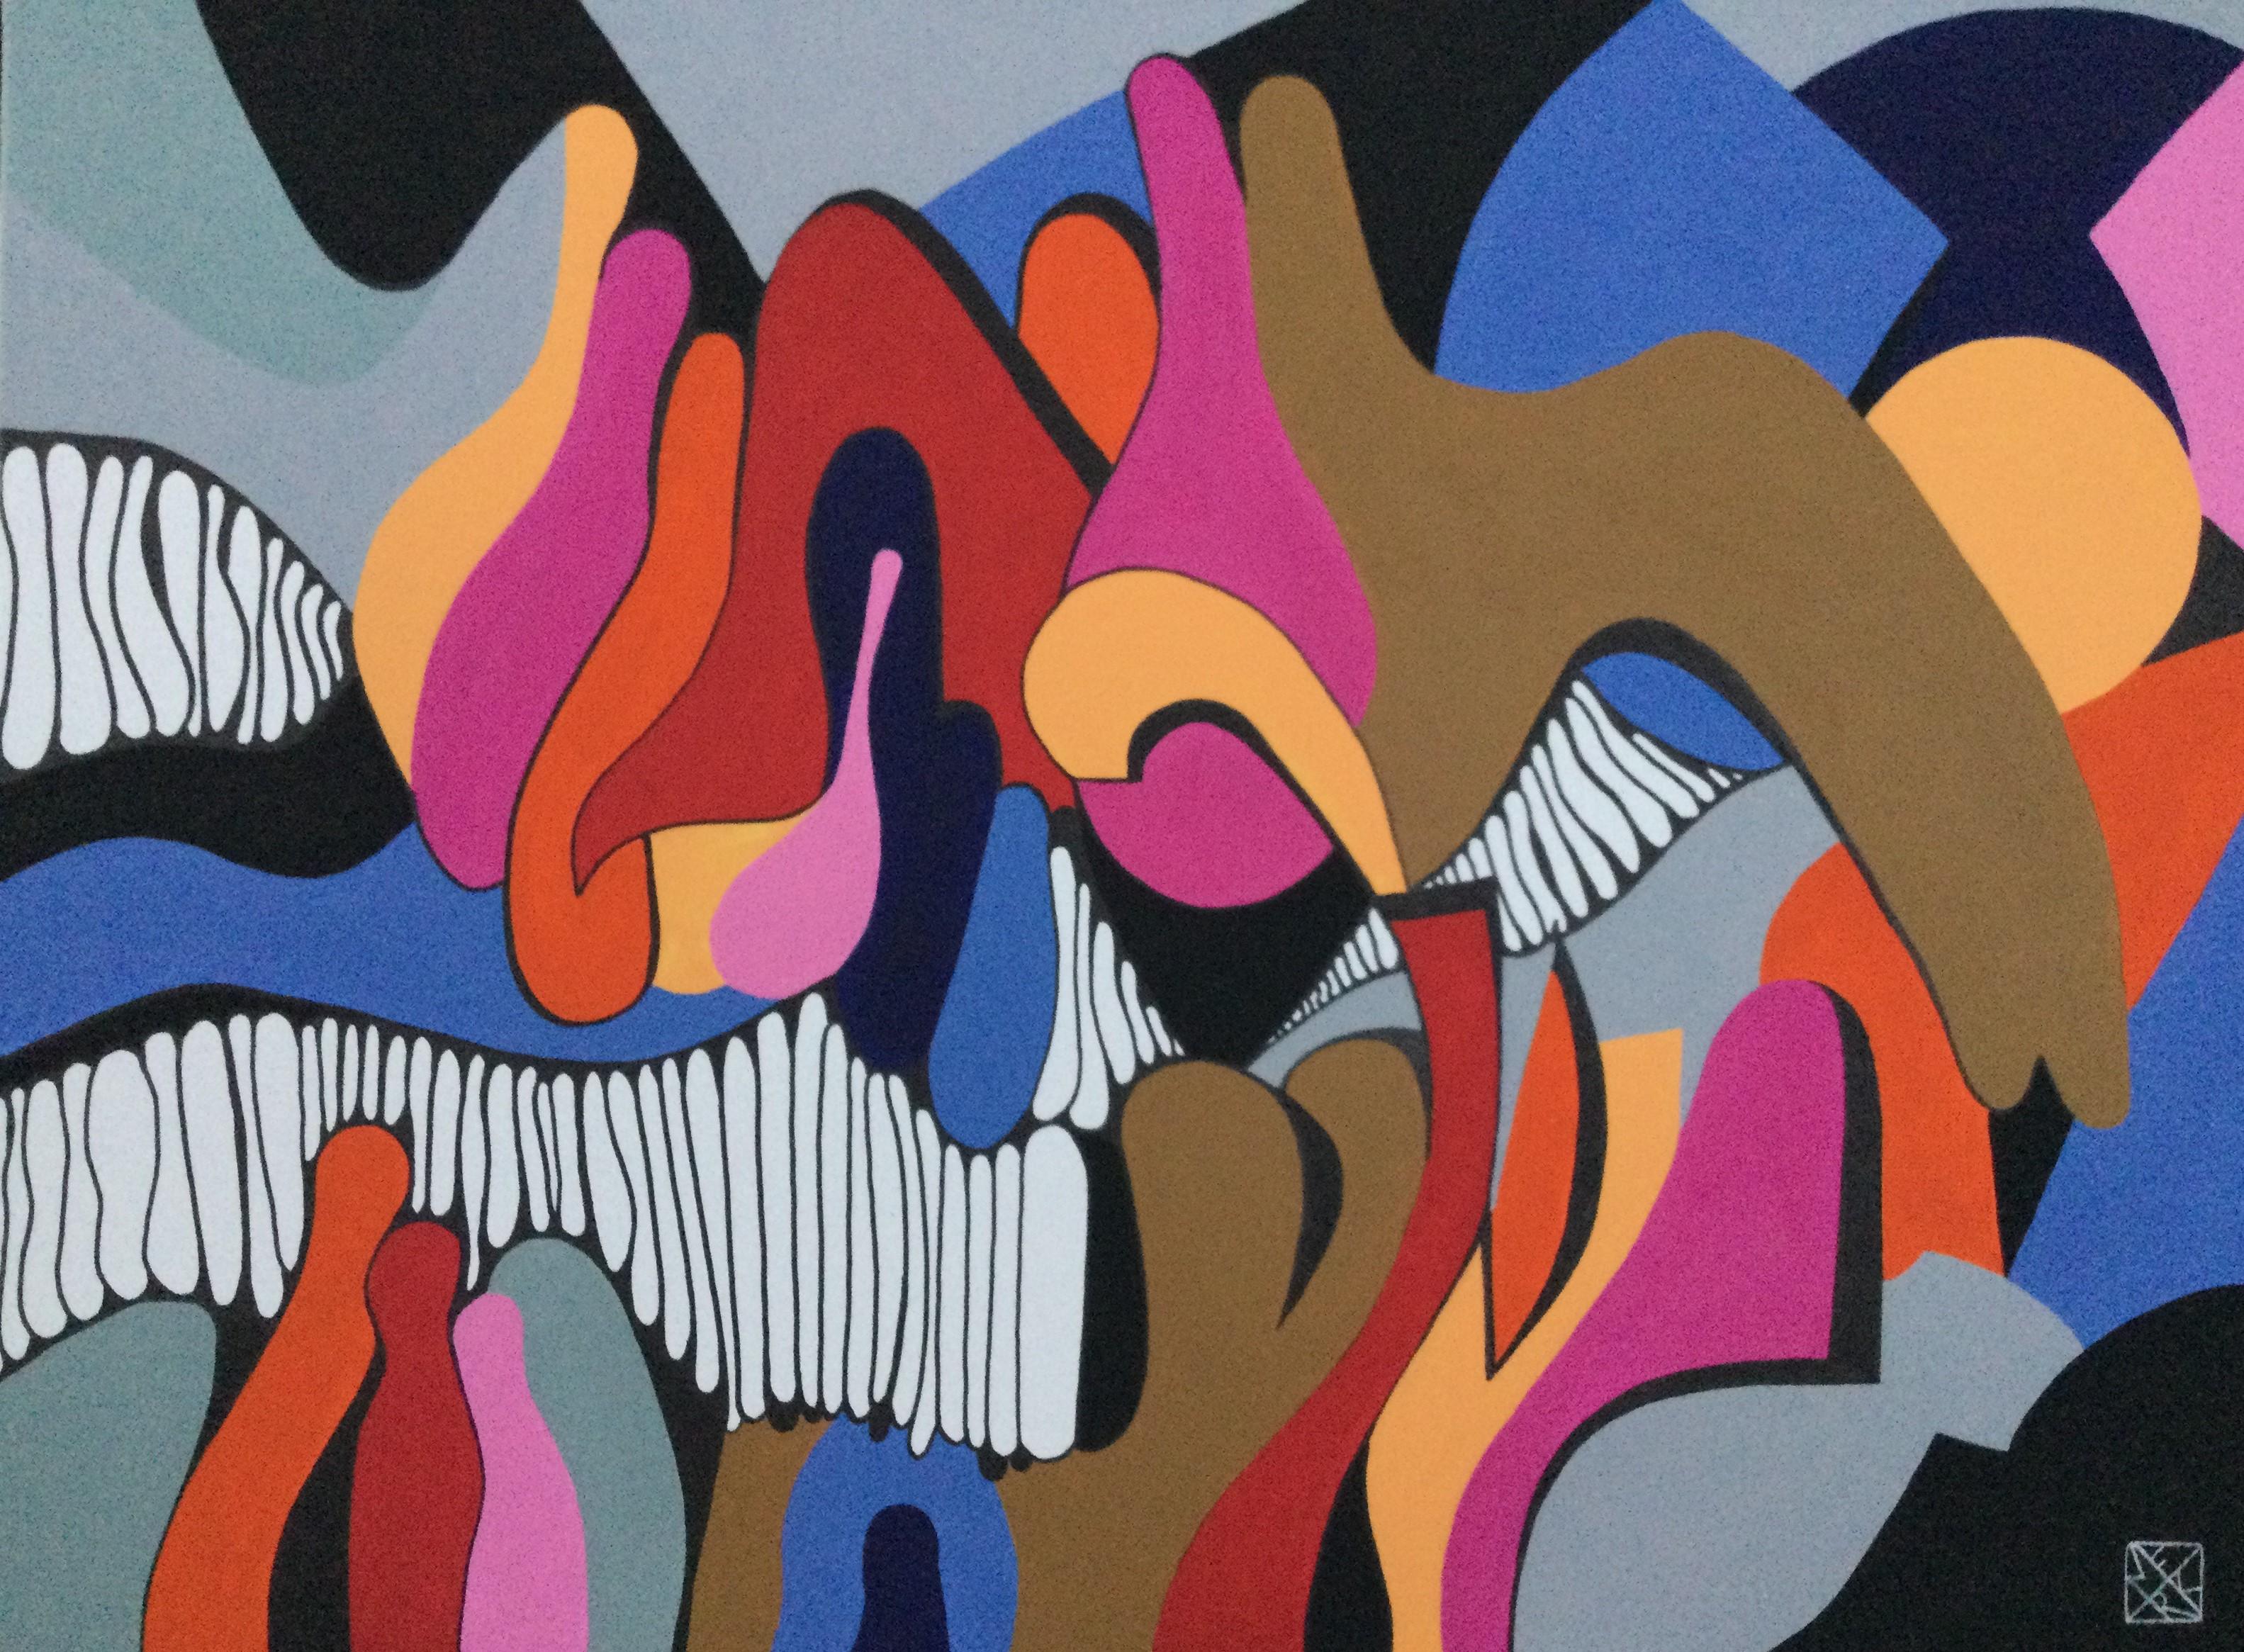 Acrylique sur toile

Brigitte Thonhauser-Merk est née le 18 février 1943 à Vienne / Autriche et vit à Perchtoldsdorf, un village situé dans les vignobles entourant la capitale. Ses peintures acryliques sont régulièrement exposées à la galerie Art Up